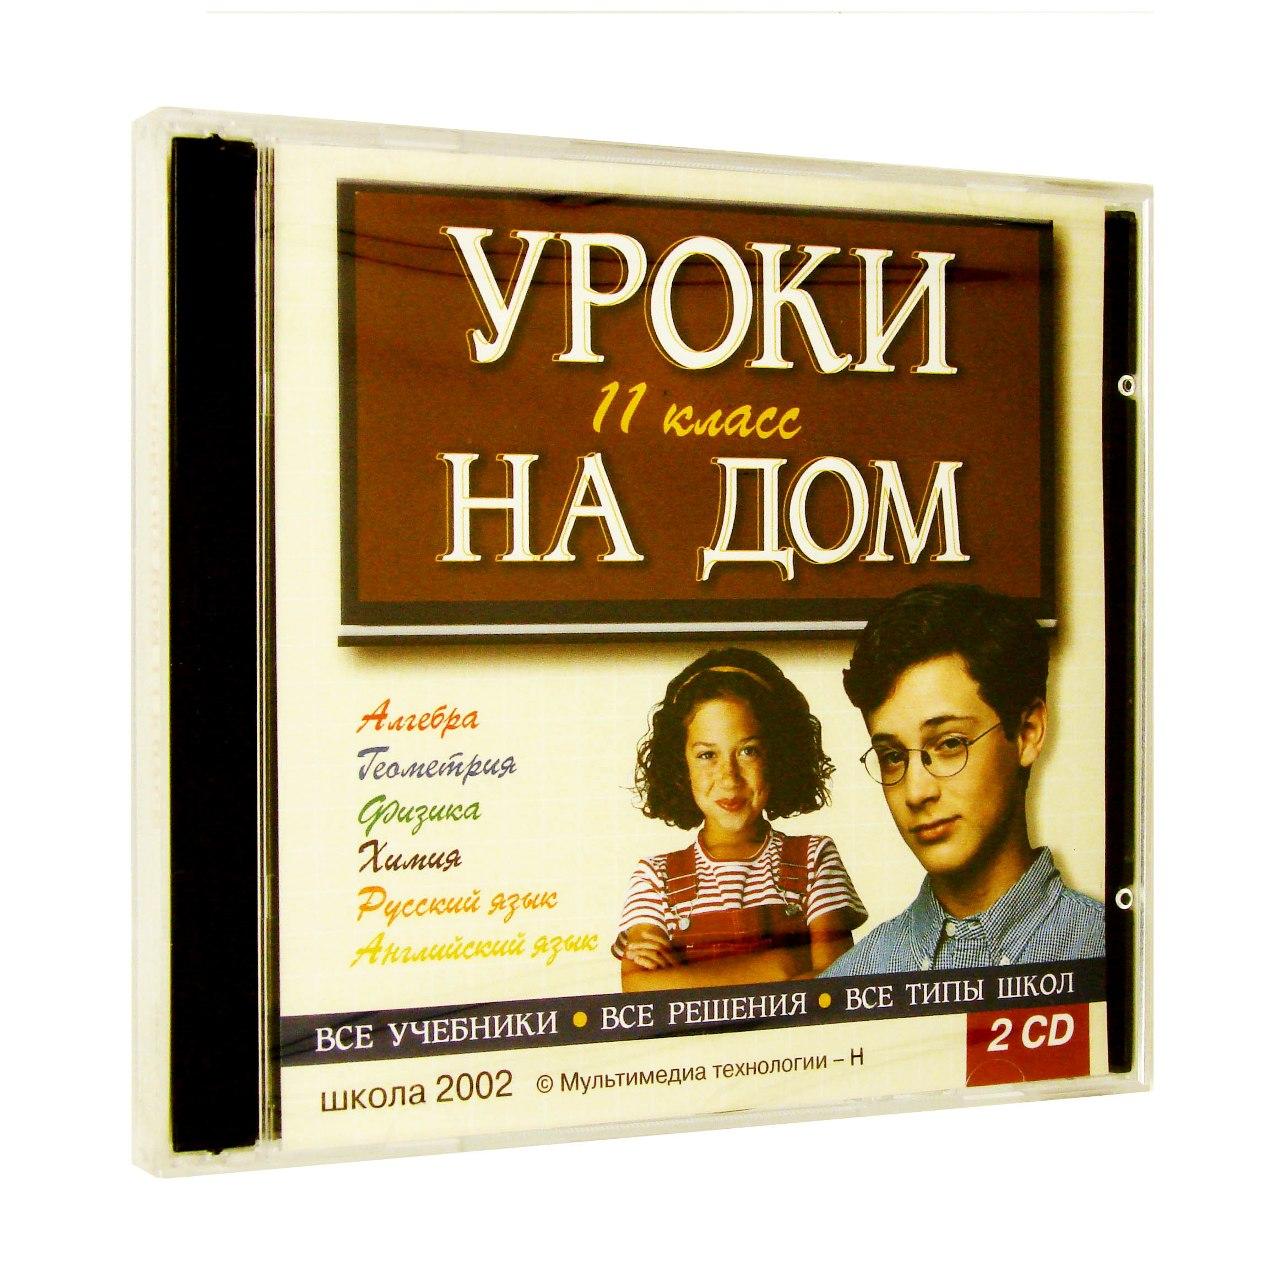 Компьютерный компакт-диск Уроки на дом. 11 кл. (ПК), фирма "Мультимедиа технологии - Н" 2 CD